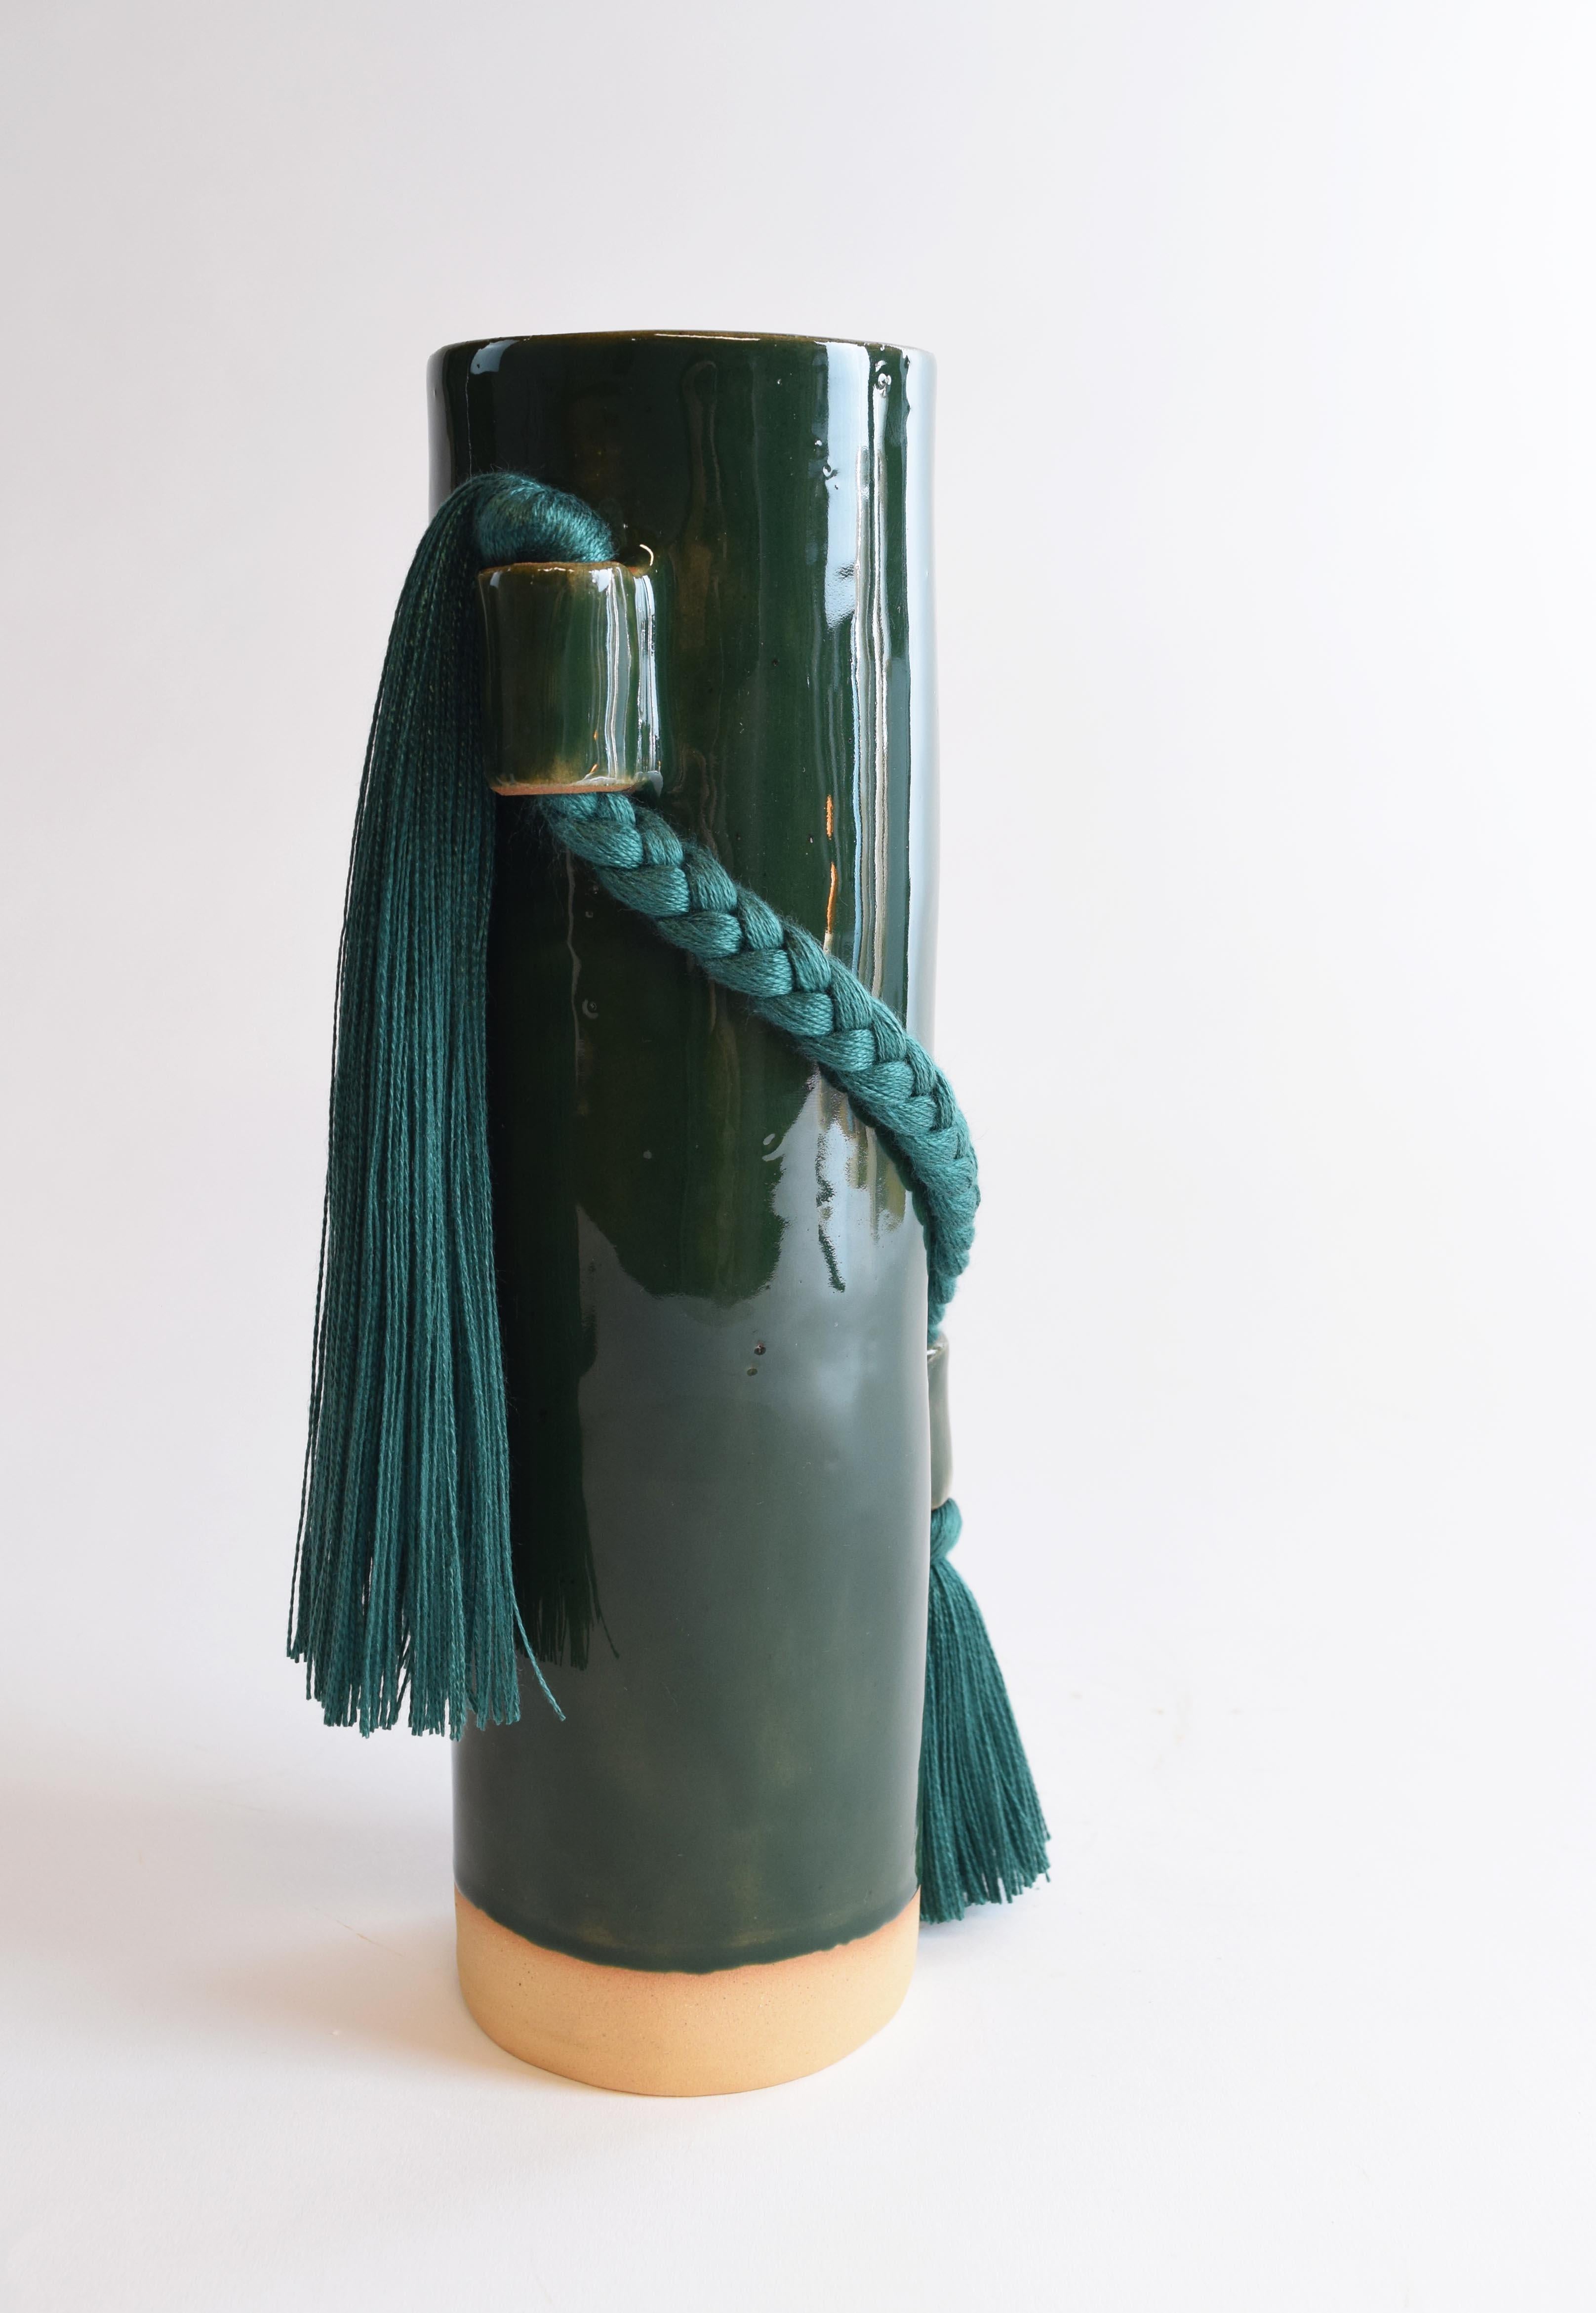 Vase #695 par Karen Gayle Tinney

À la fois fonctionnel et sculptural, ce vase est de la taille idéale pour un petit bouquet, mais il est suffisamment détaillé pour pouvoir être utilisé comme objet décoratif sur une étagère ou une table.

Grès formé